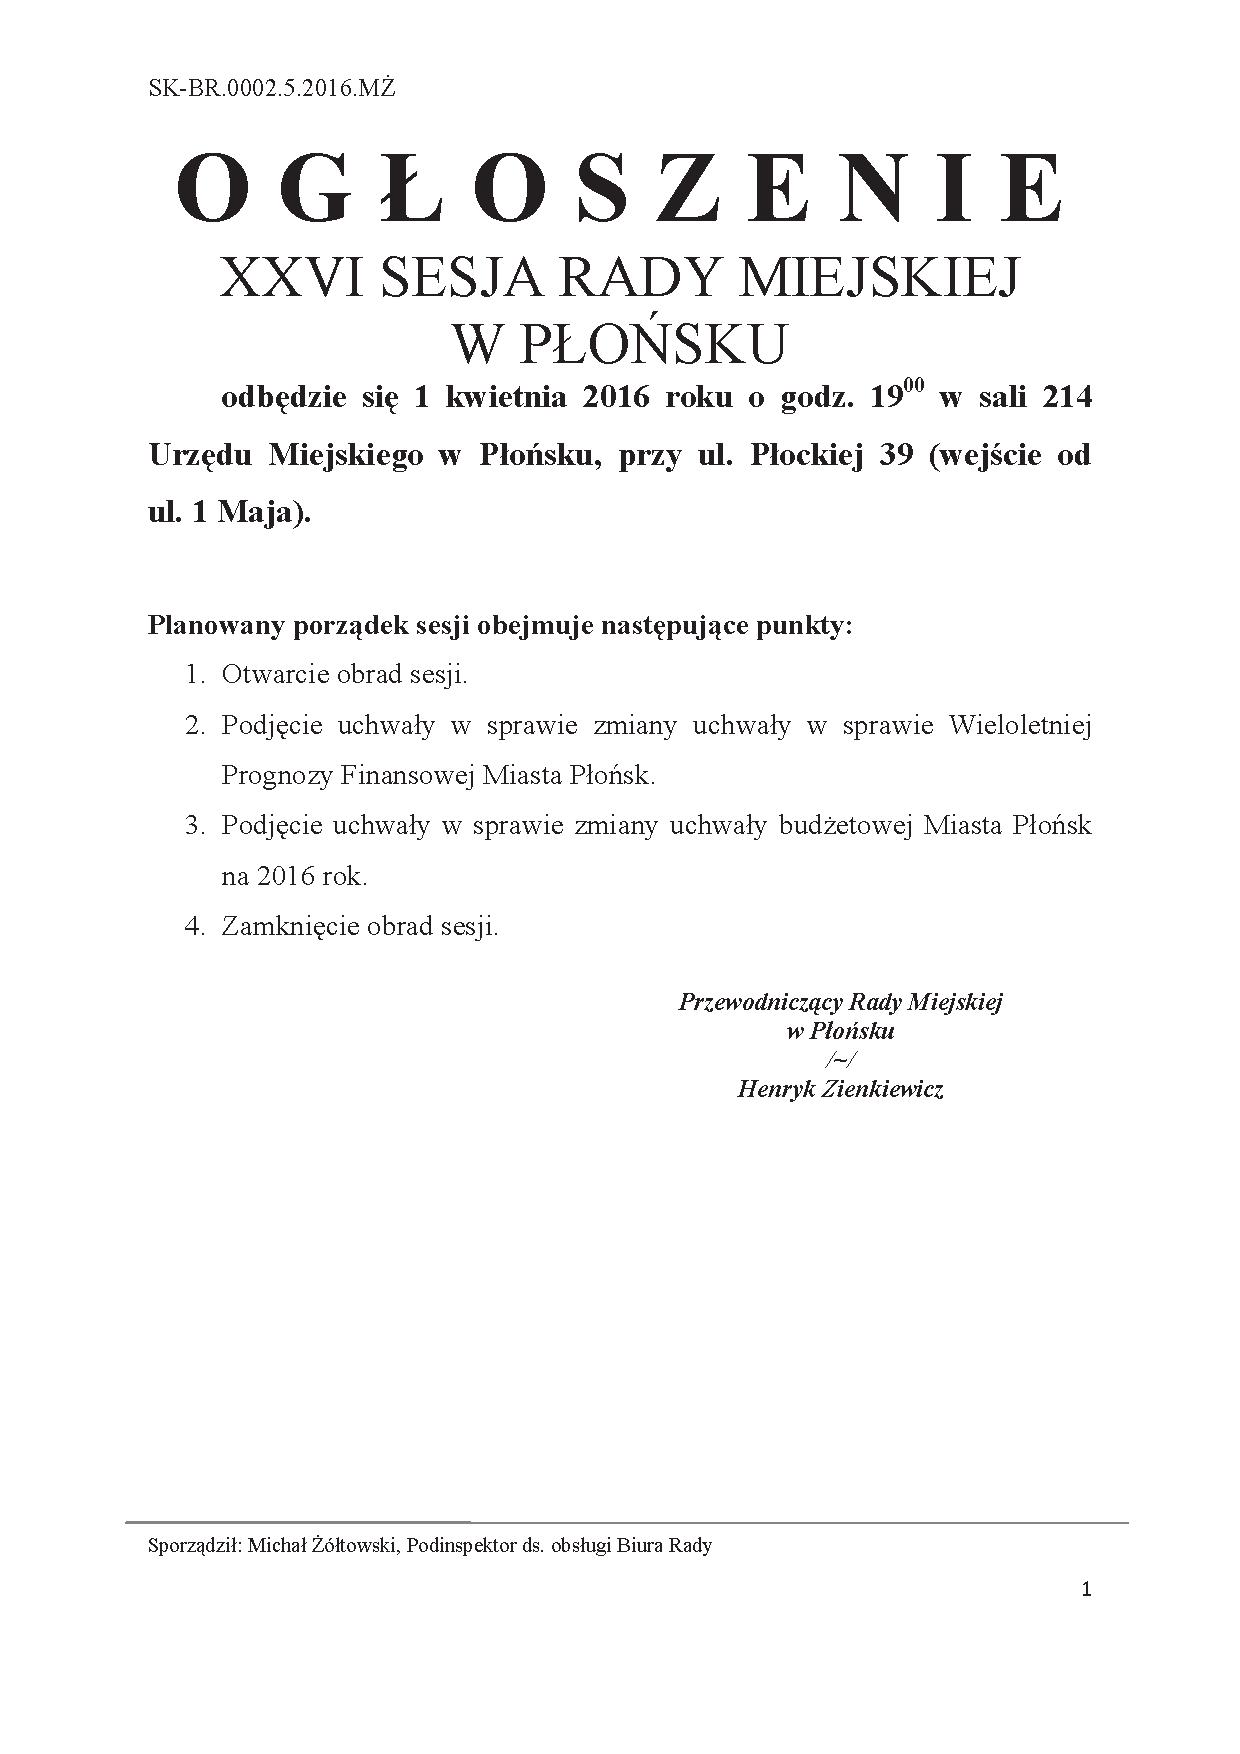 XXVI Sesja Rady Miejskiej w Płońsku